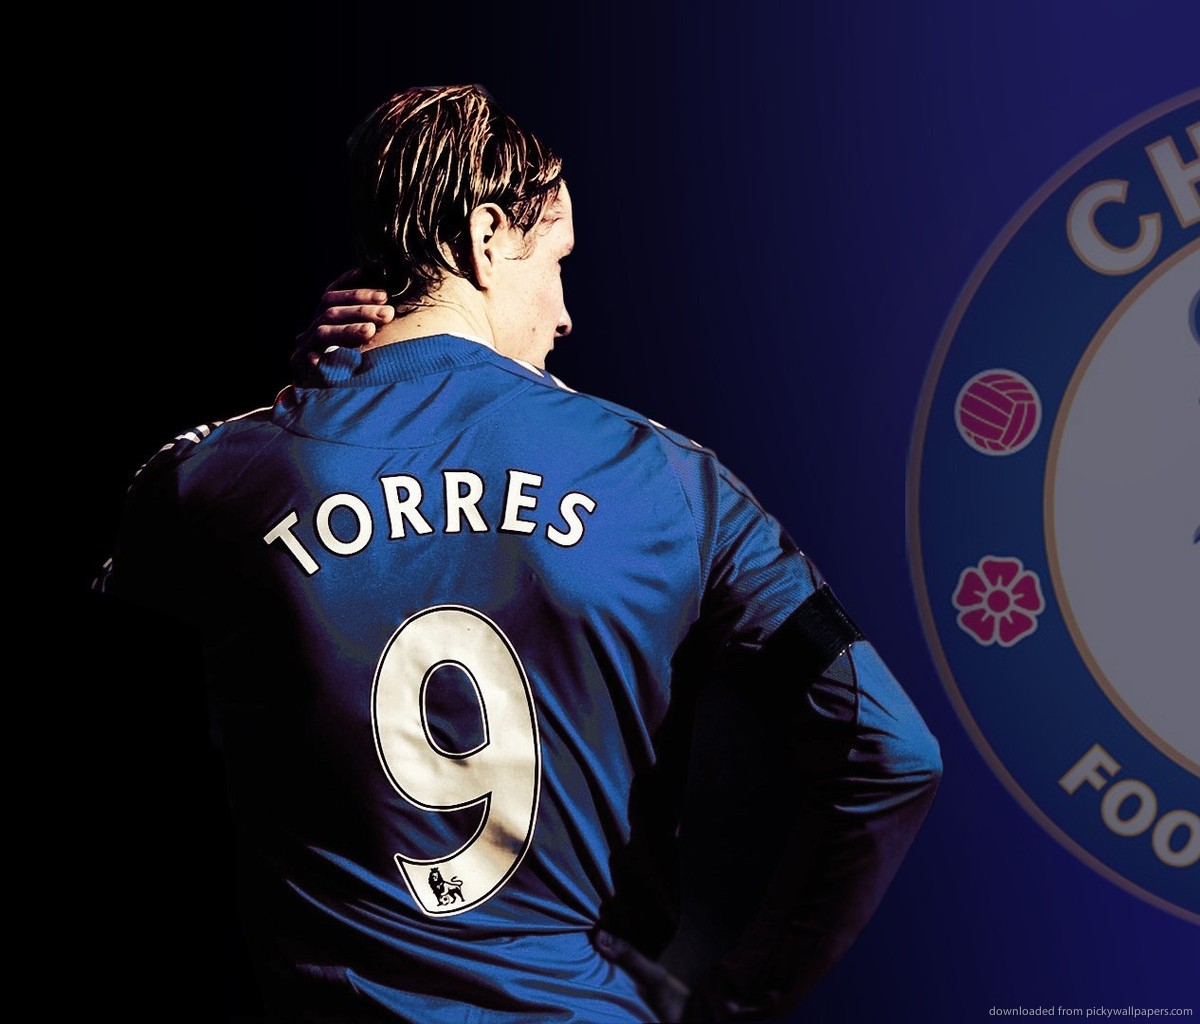 http://3.bp.blogspot.com/-O7vdQm5Q3Dg/UVq-1P1LKwI/AAAAAAAAFfY/AXcnhCakr2o/s1600/Fernando-Torres-Chelsea-FC-Wallpapers+06.jpg